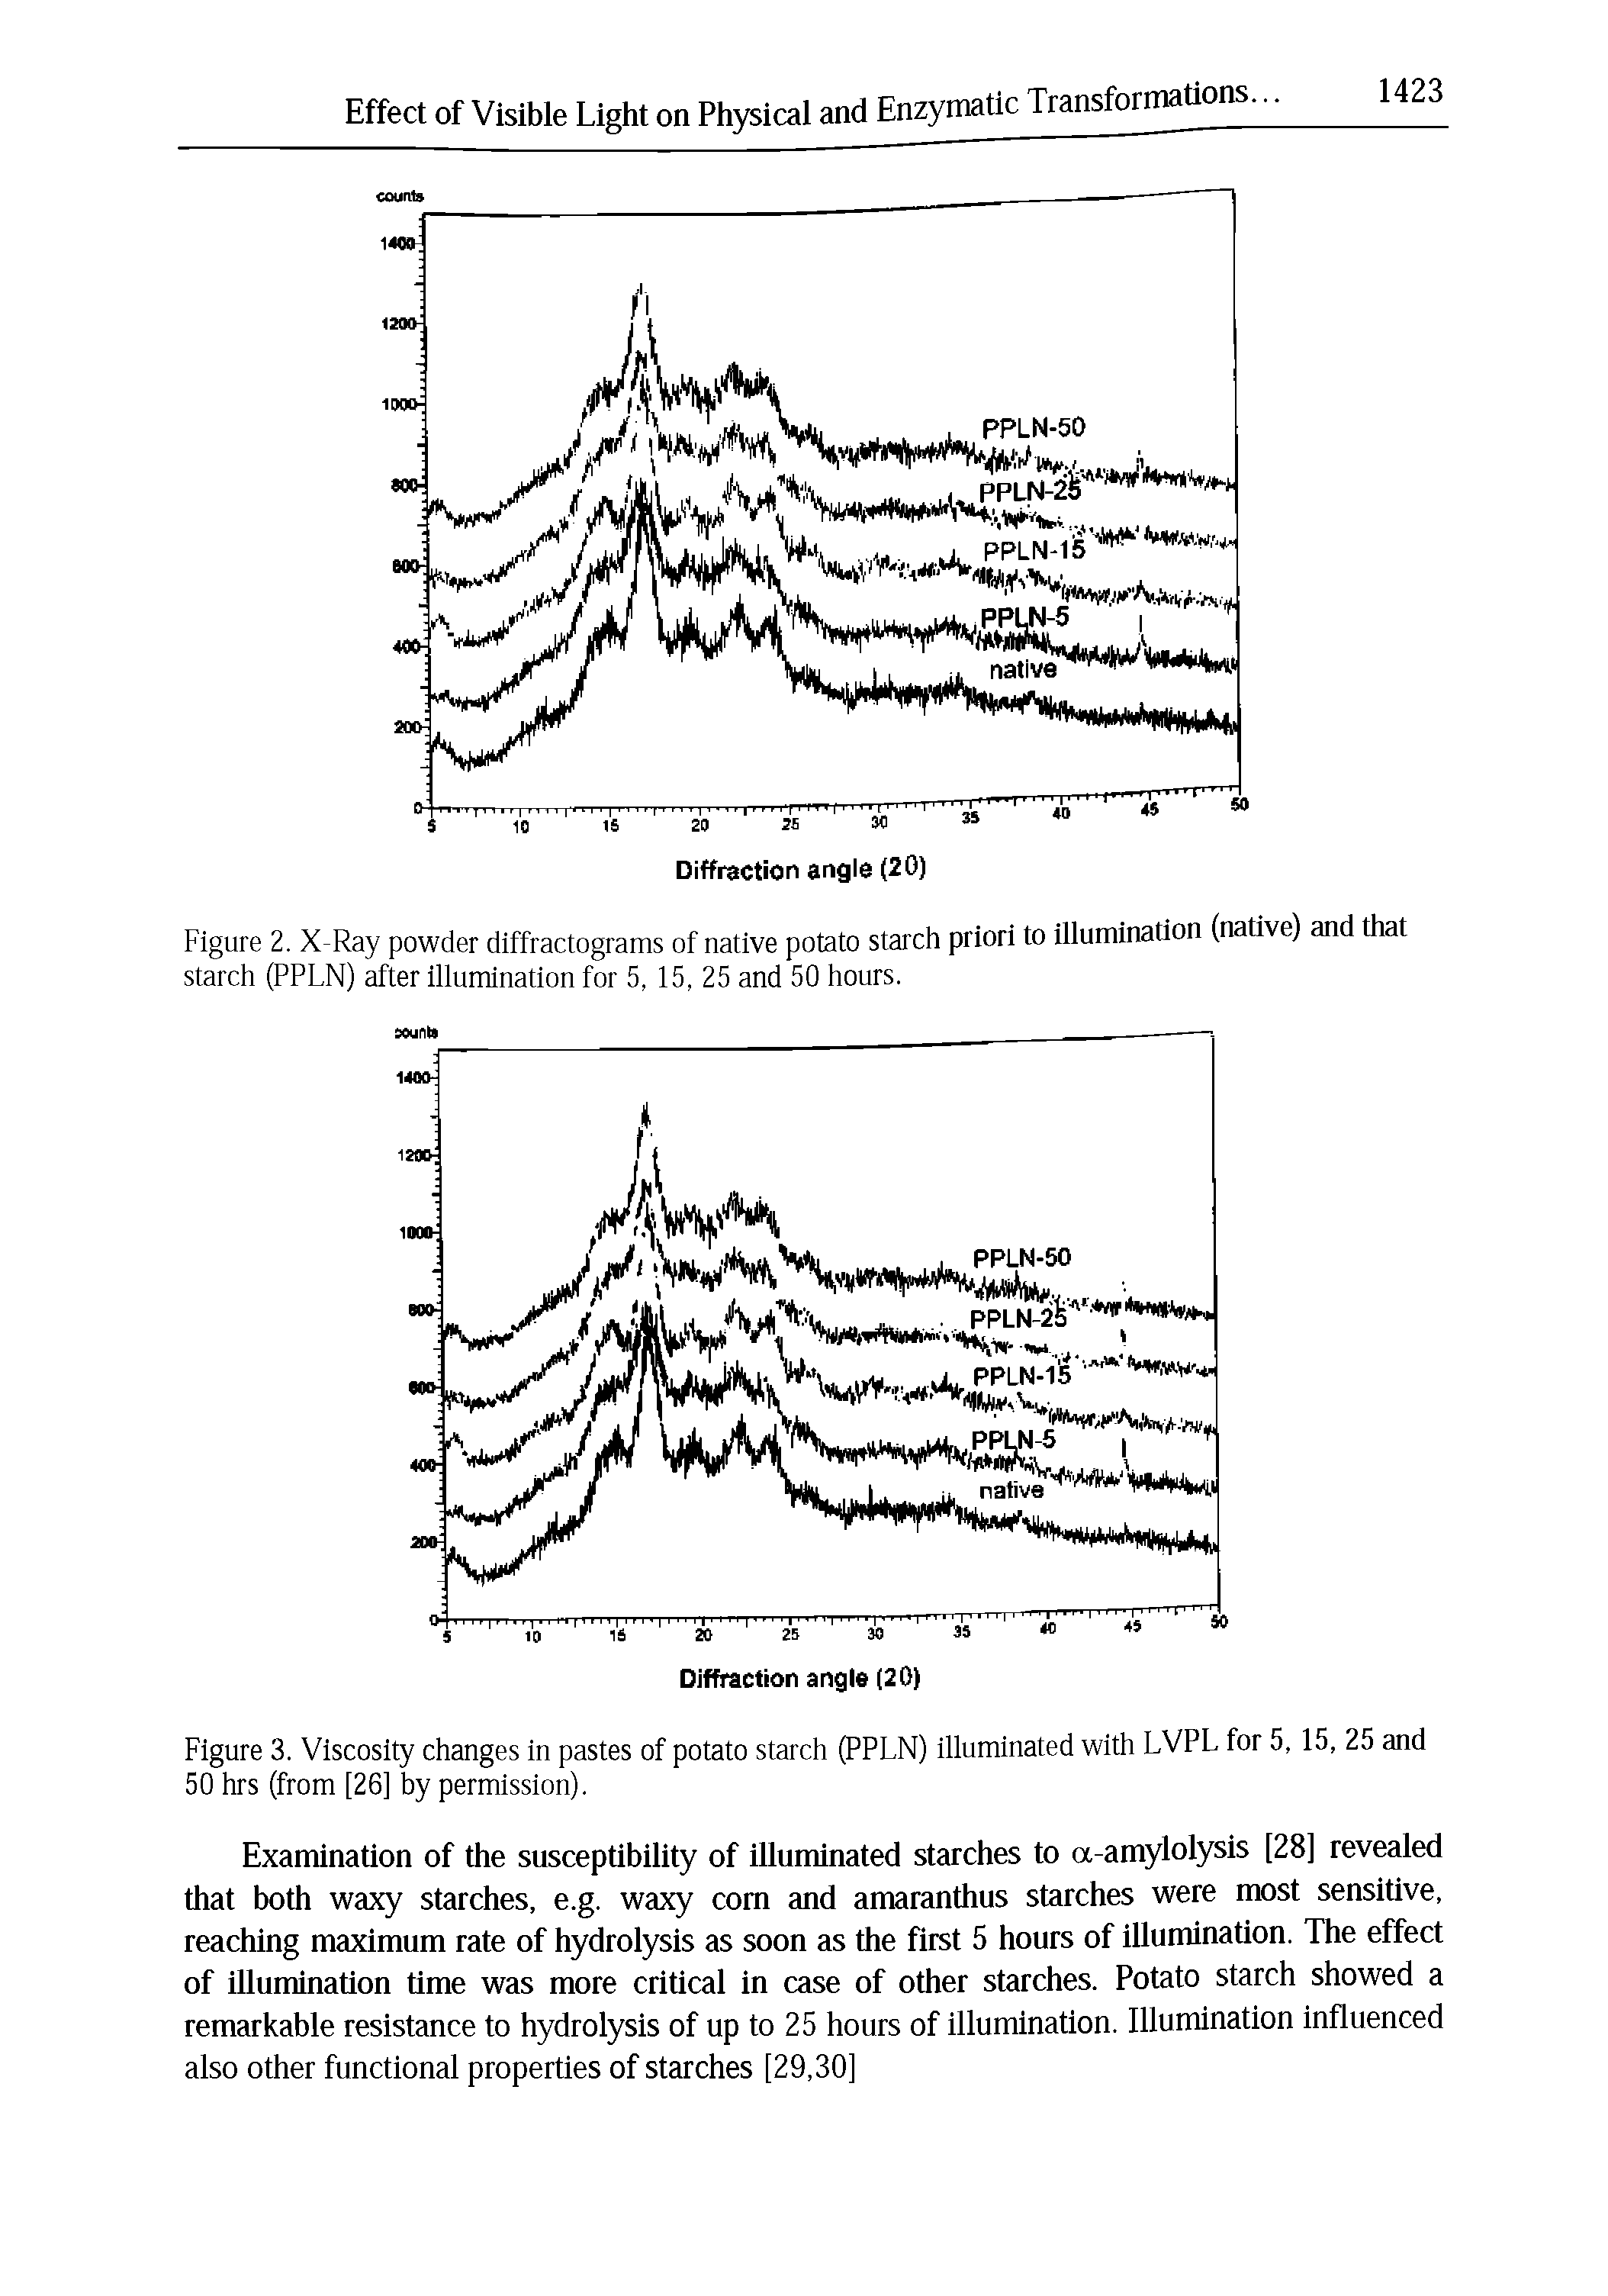 Figure 2. X-Ray powder diffractograms of native potato starch priori to illumination (native) and that starch (PPLN) after illumination for 5, 15, 25 and 50 hours.